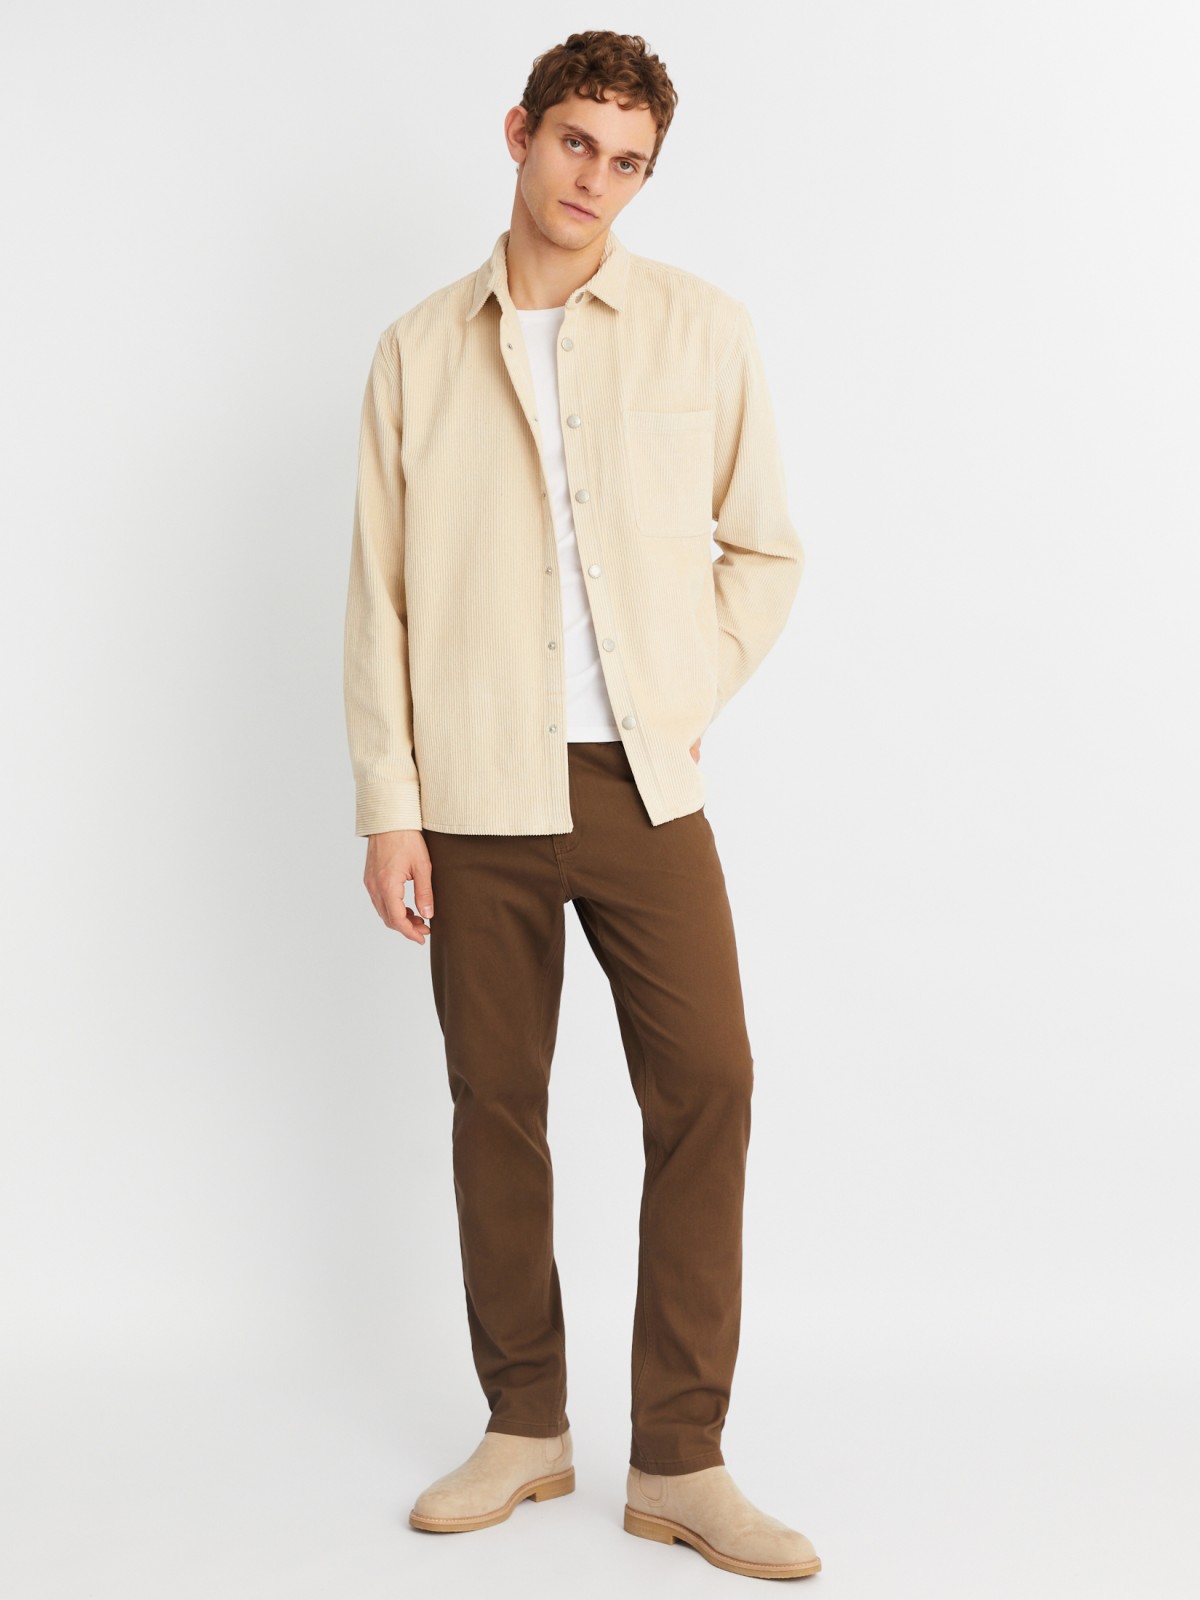 Вельветовая куртка-рубашка из хлопка с длинным рукавом zolla 21342214R041, цвет горчичный, размер M - фото 2